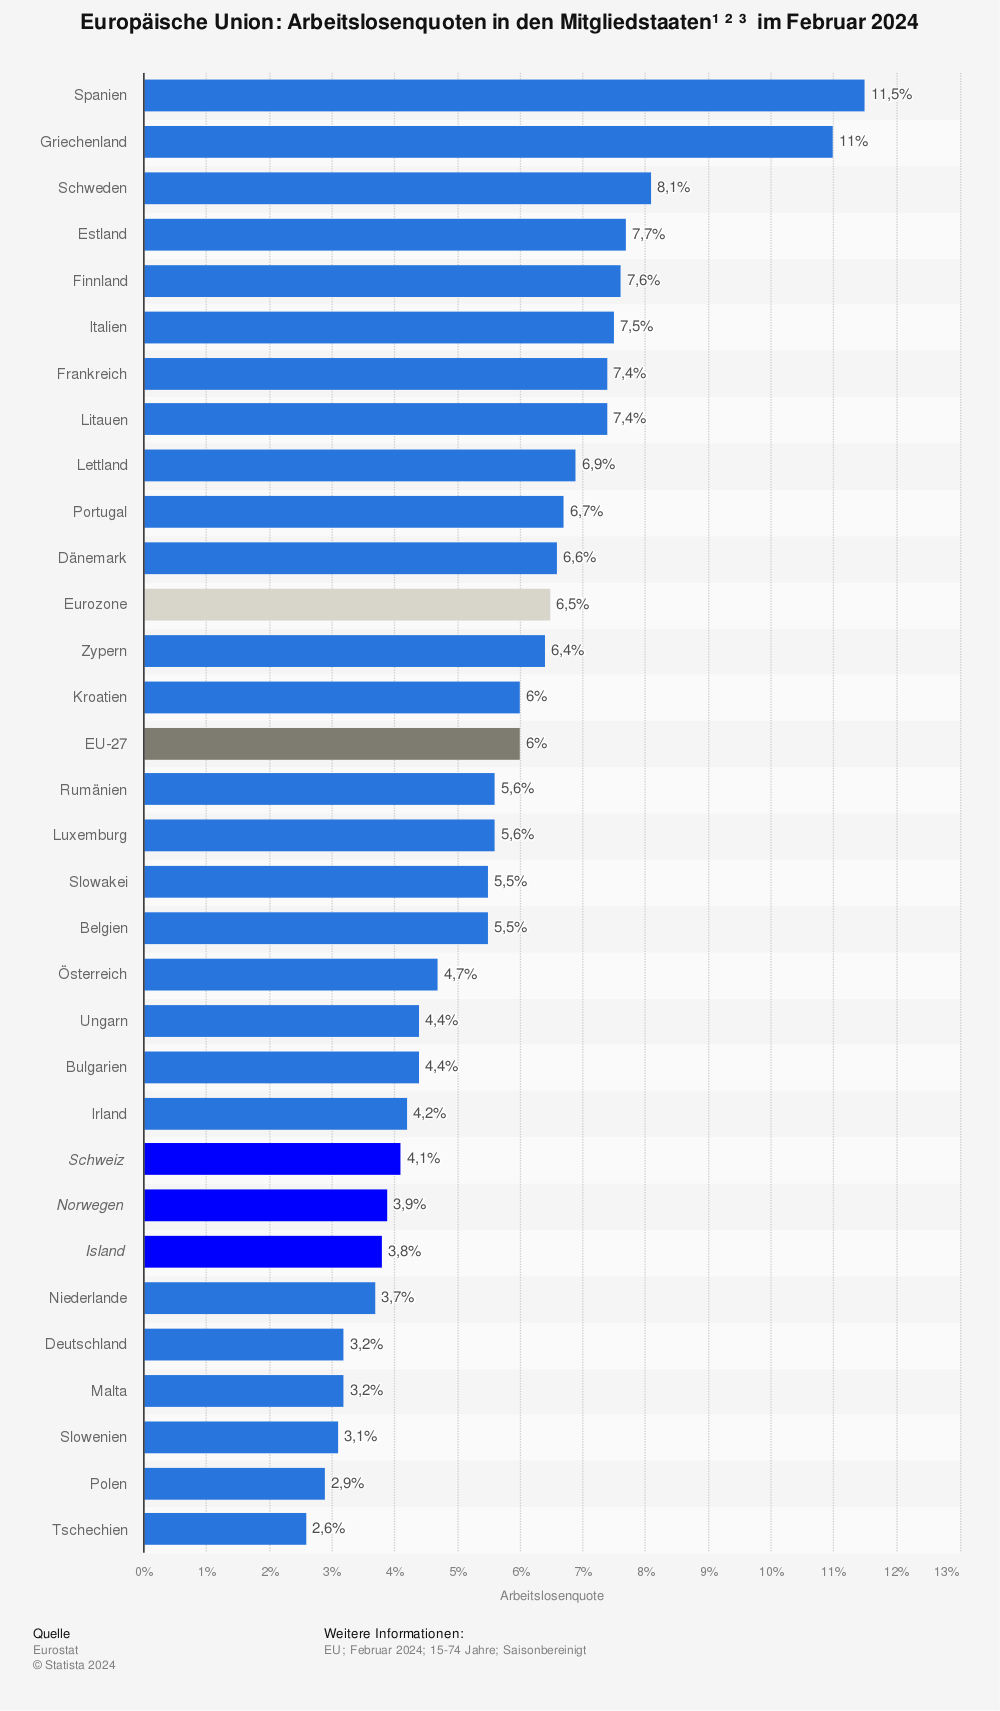 Statistik: Europäische Union: Arbeitslosenquoten in den Mitgliedsstaaten im Juni 2015 | Statista